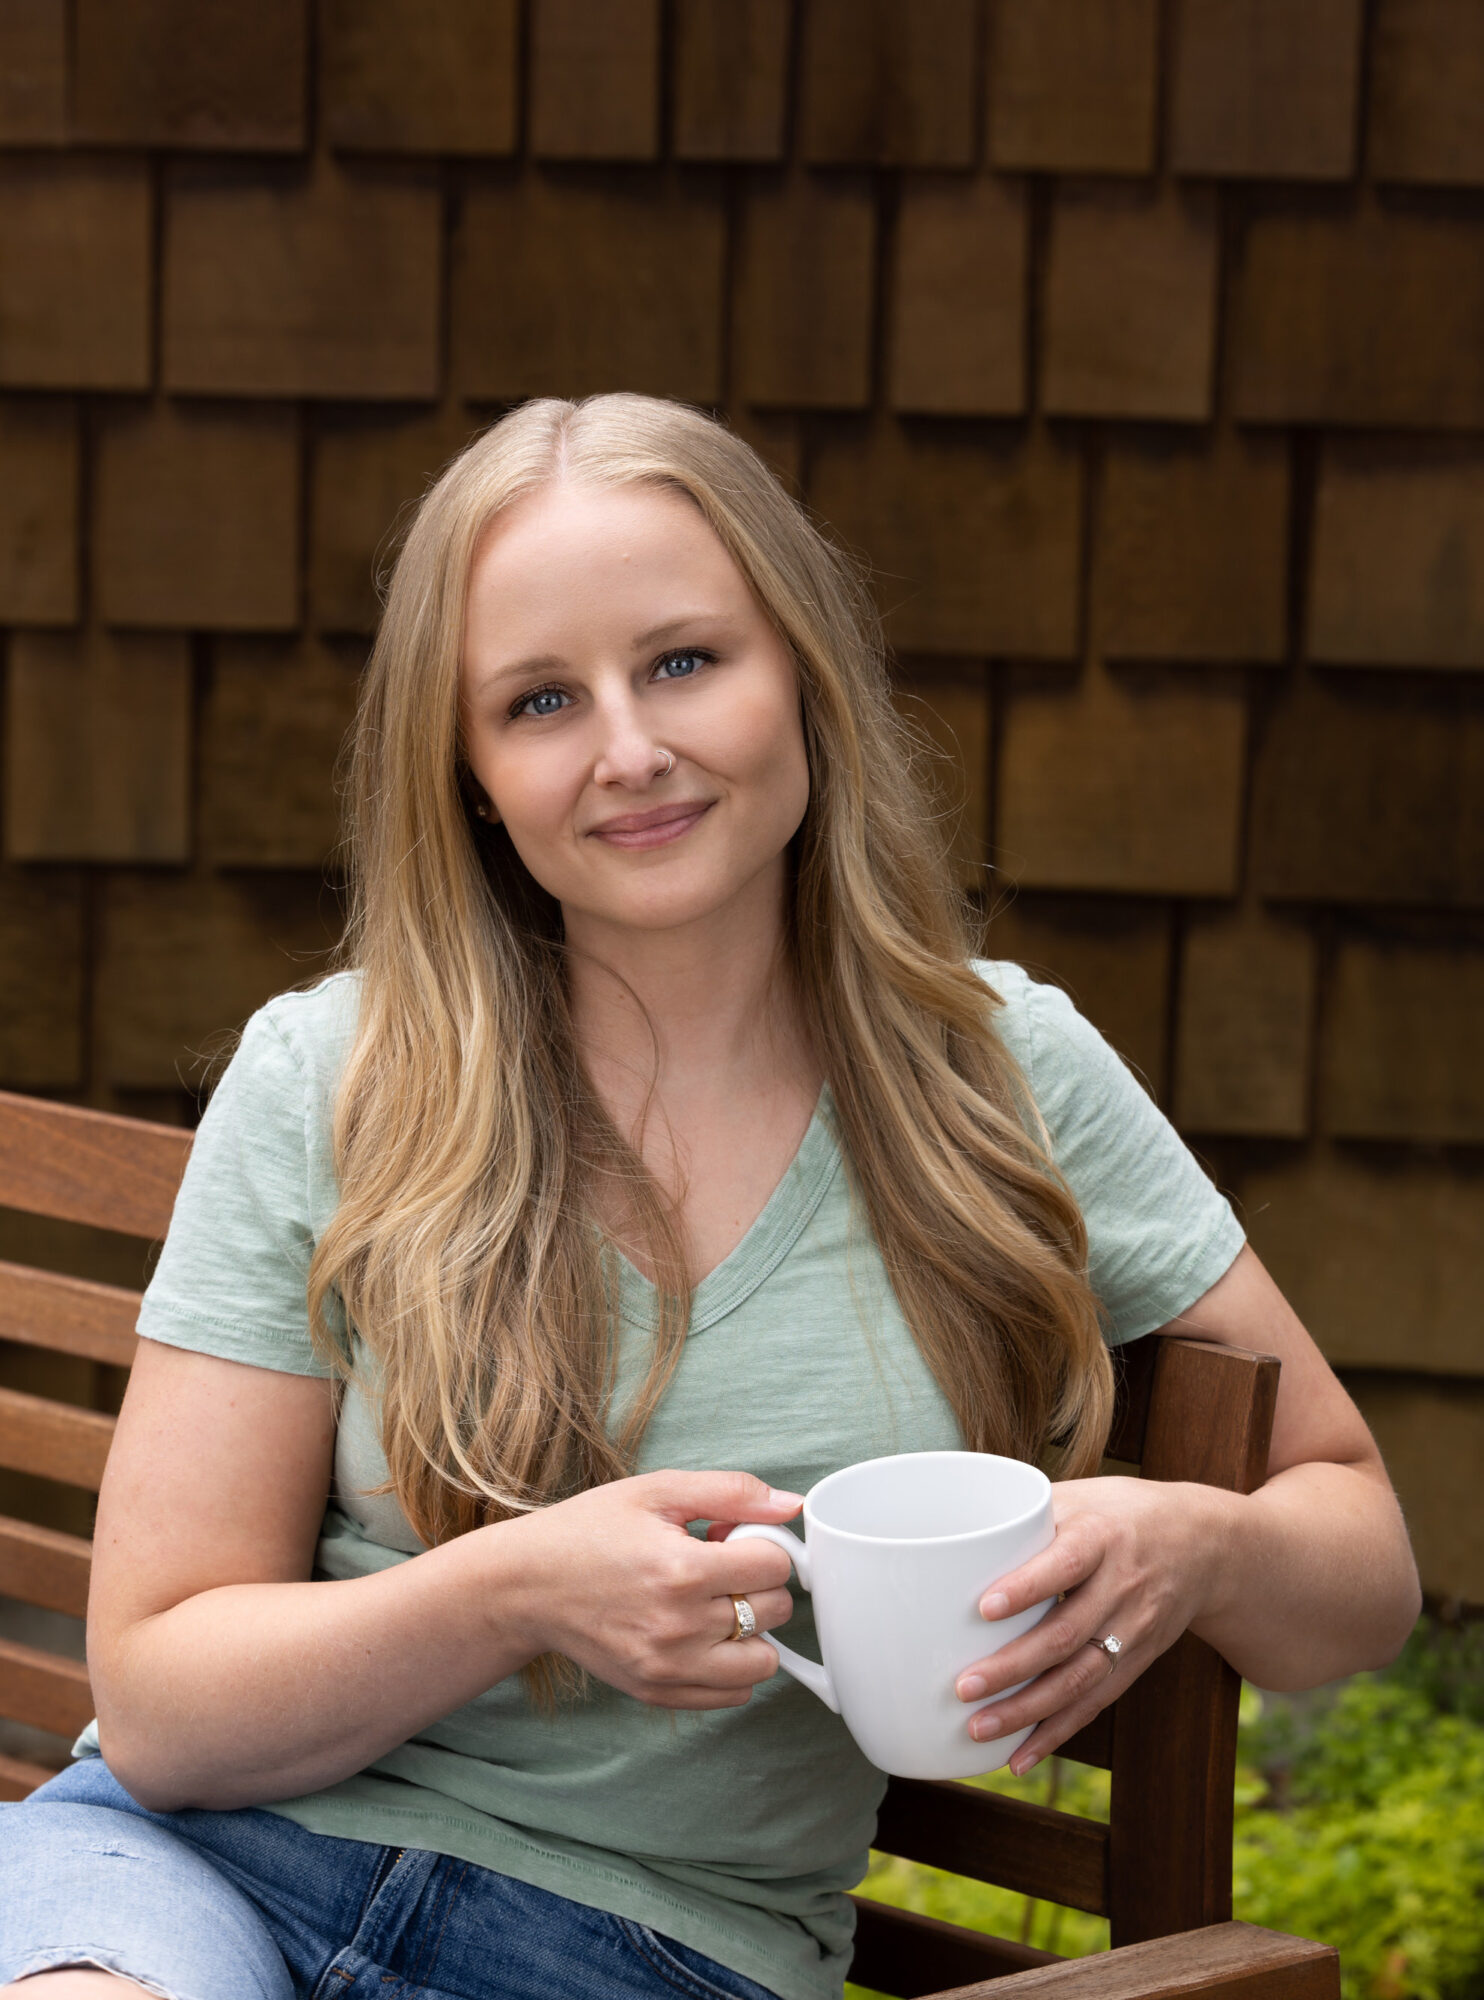 Membre d'Empowered Voices portant un t-shirt vert clair à col en V, assis sur un banc à lattes en bois marron, tenant une tasse de café blanche avec un mur en cèdre marron foncé en arrière-plan.